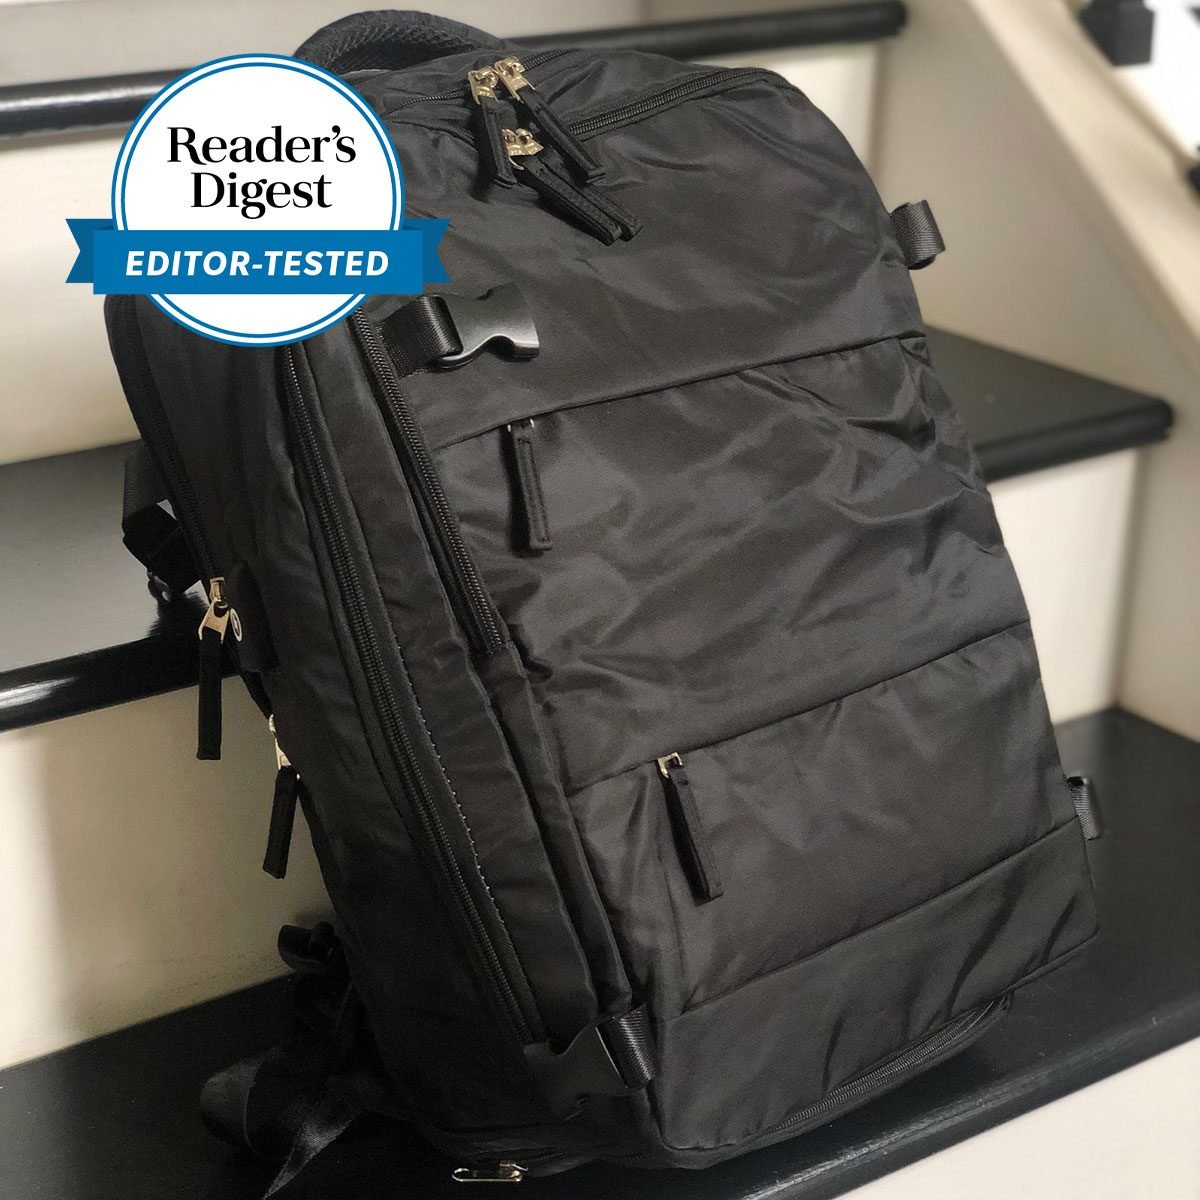 DIY Backpack Water Bottle Pocket  Diy backpack, Water bottle backpack,  Backpack pockets